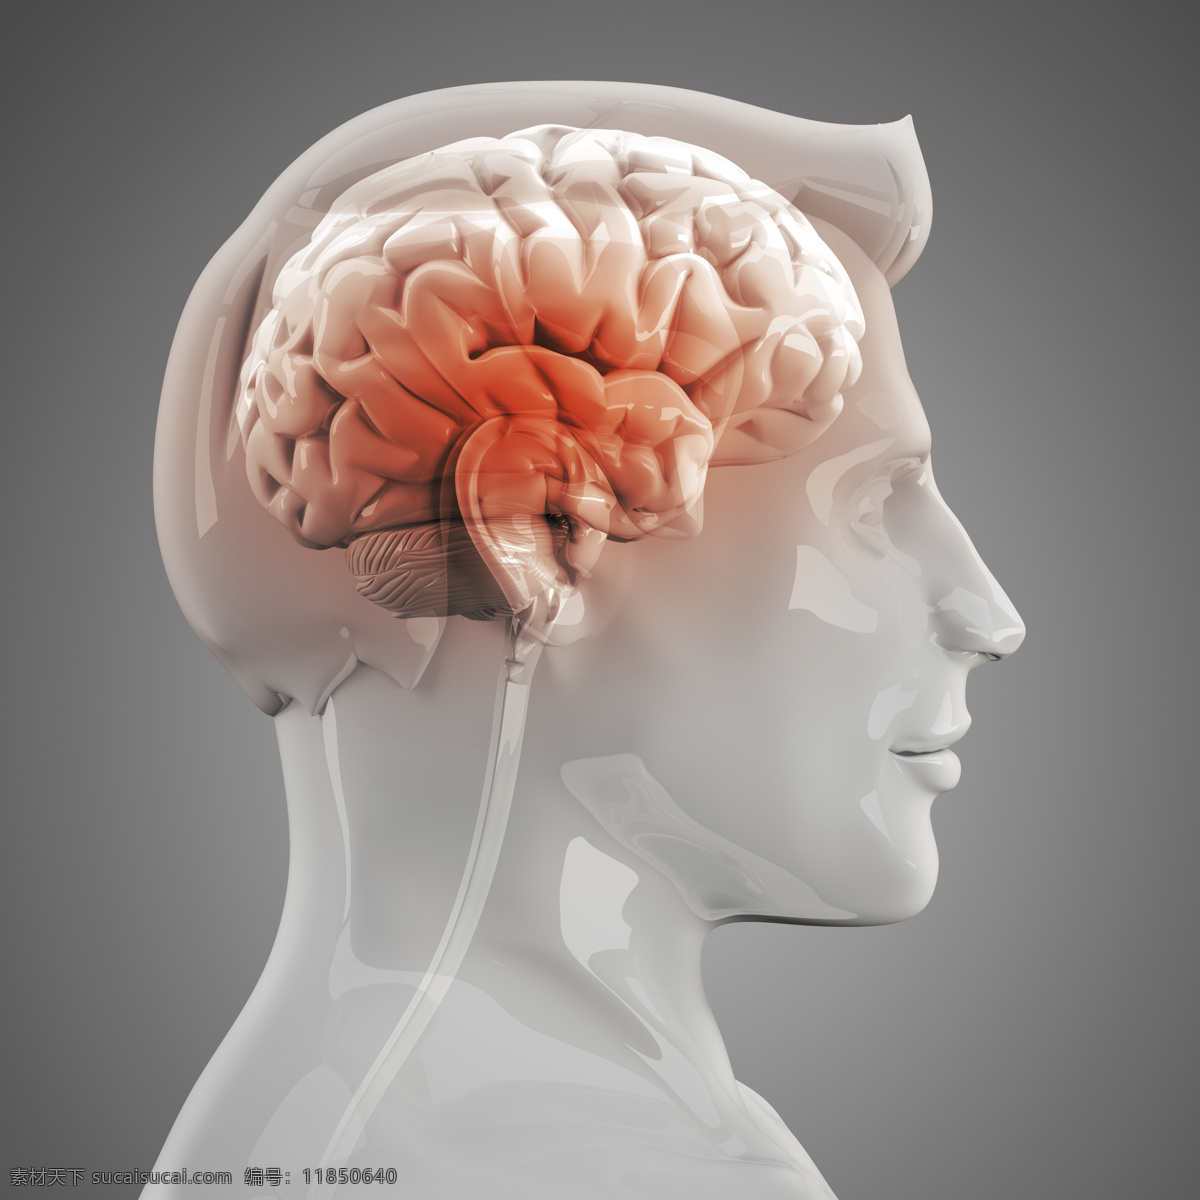 人体 左 脑 x 光 图像 透视图 x光 医疗主题 左脑 医疗护理 现代科技